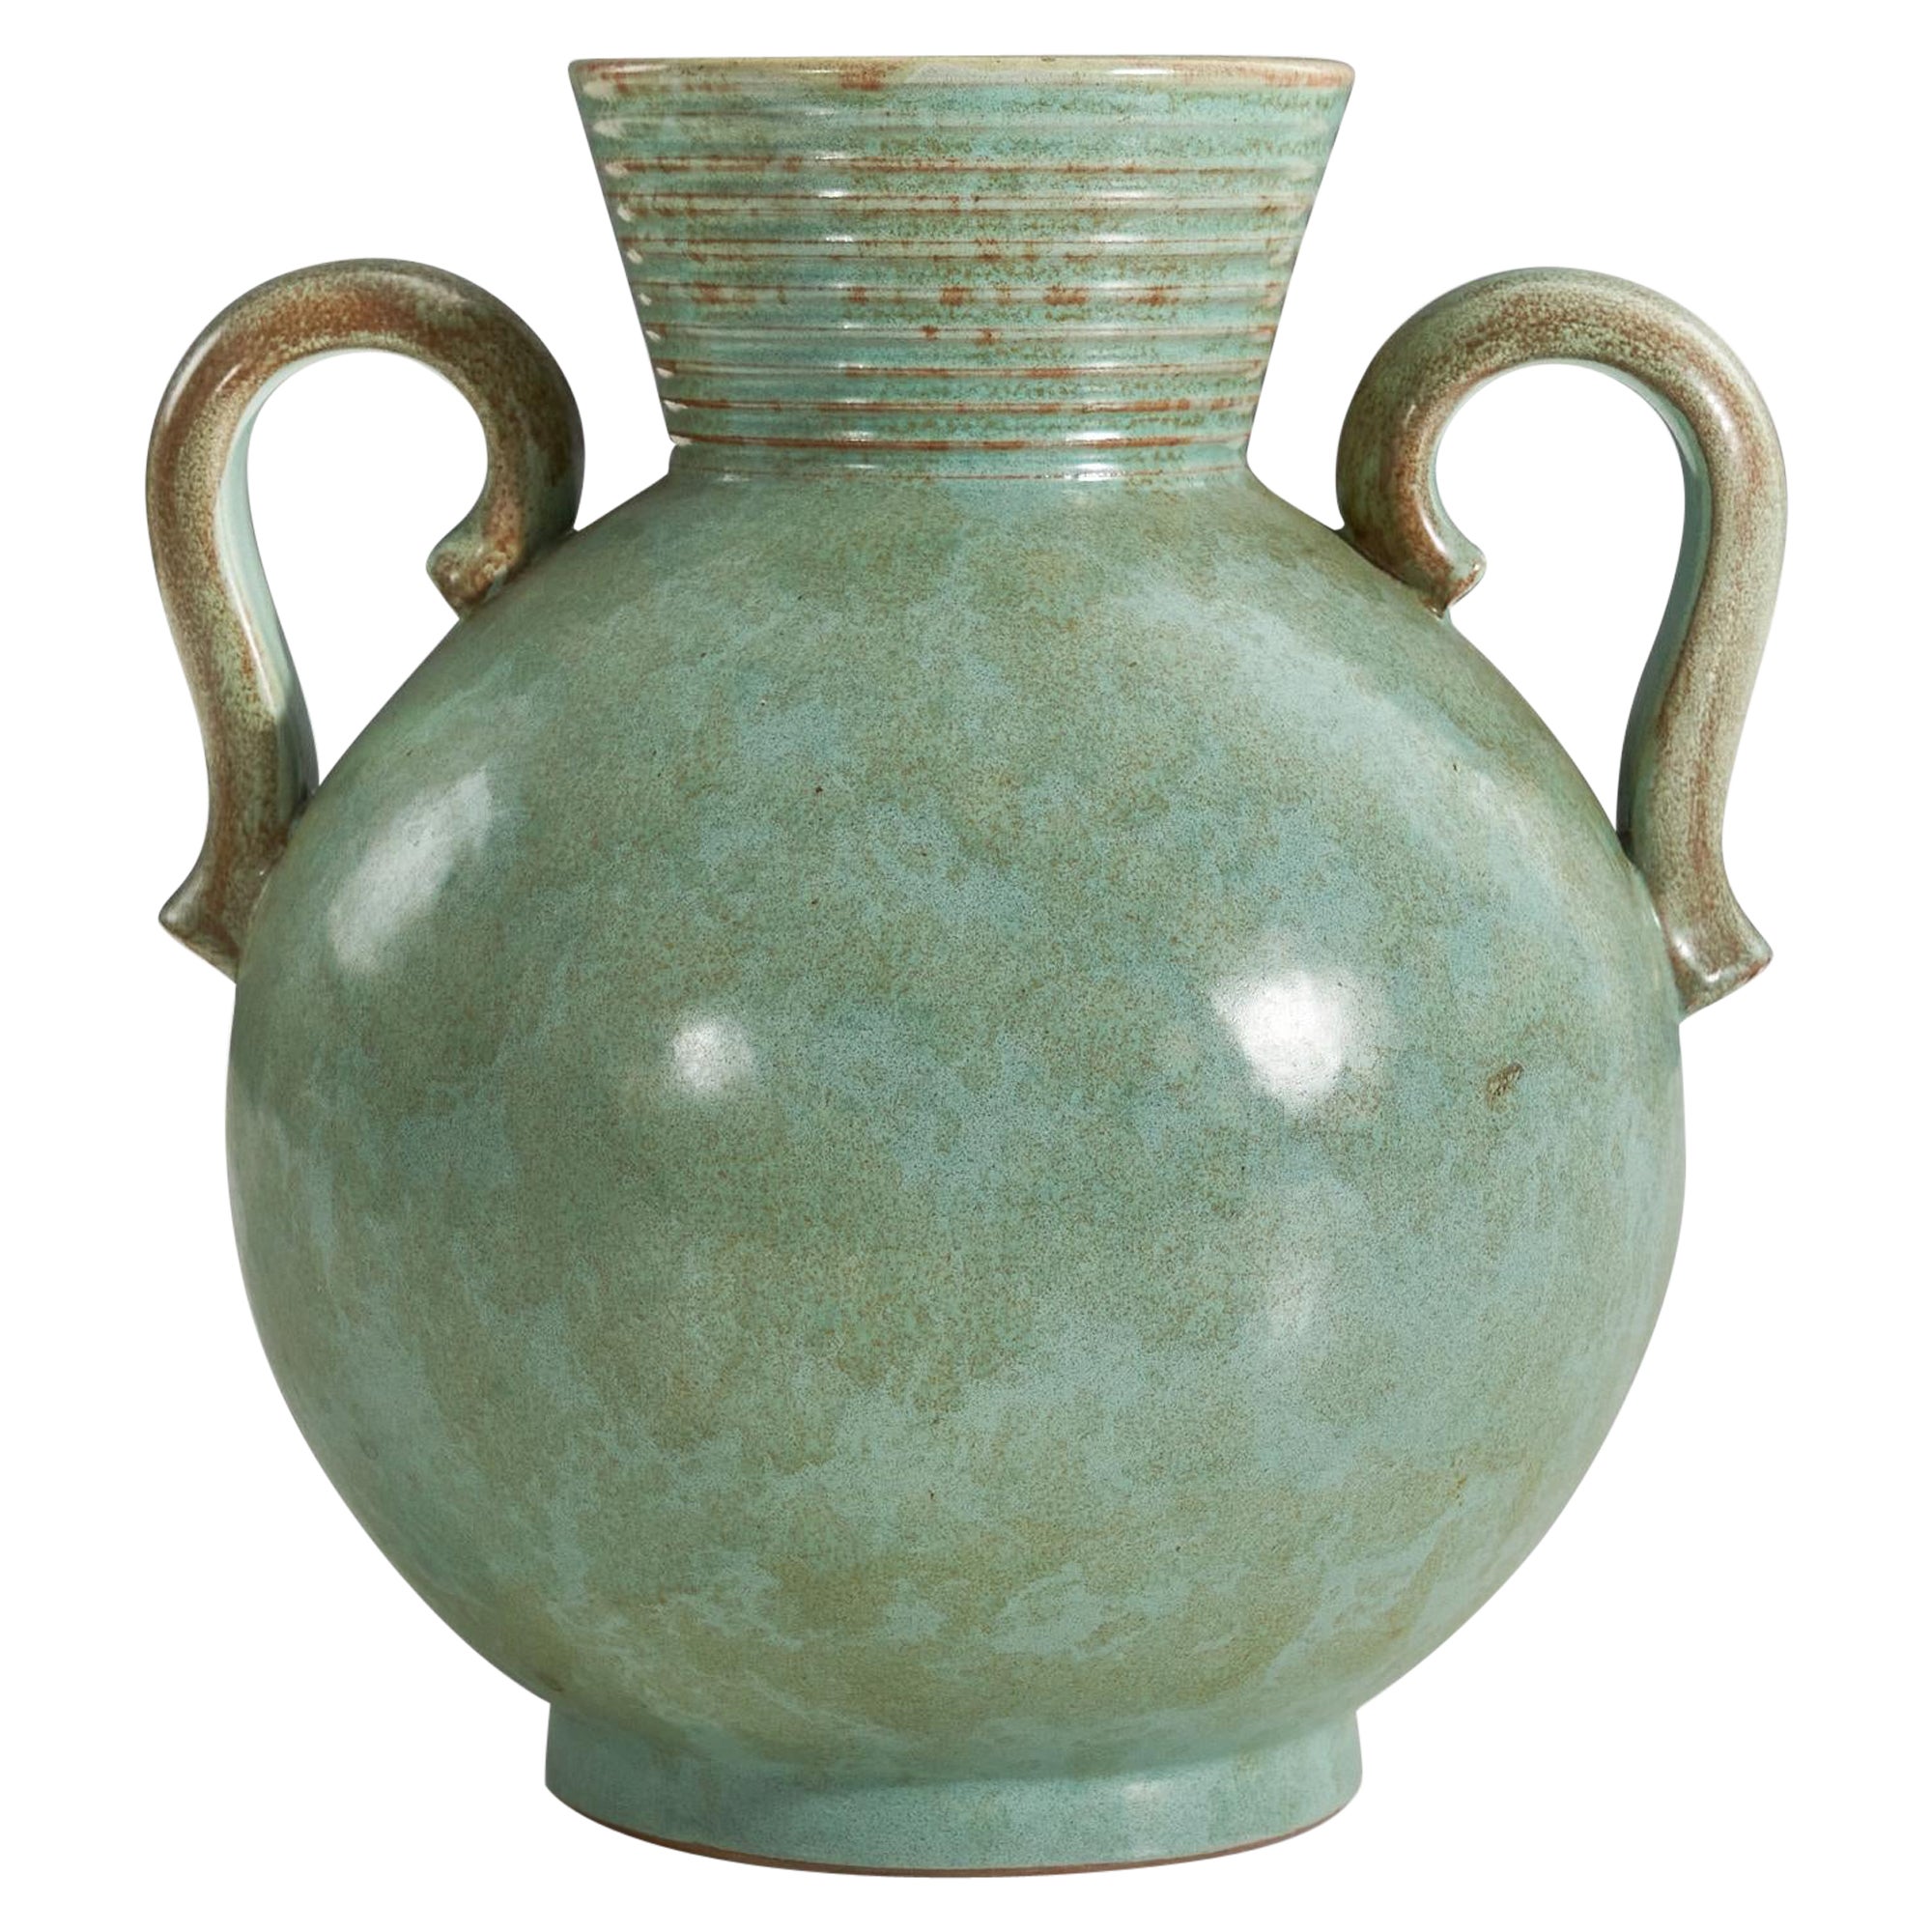 Christer Heijl, Vase, Green Earthenware, Christers Keramik, Sweden, c. 1950s